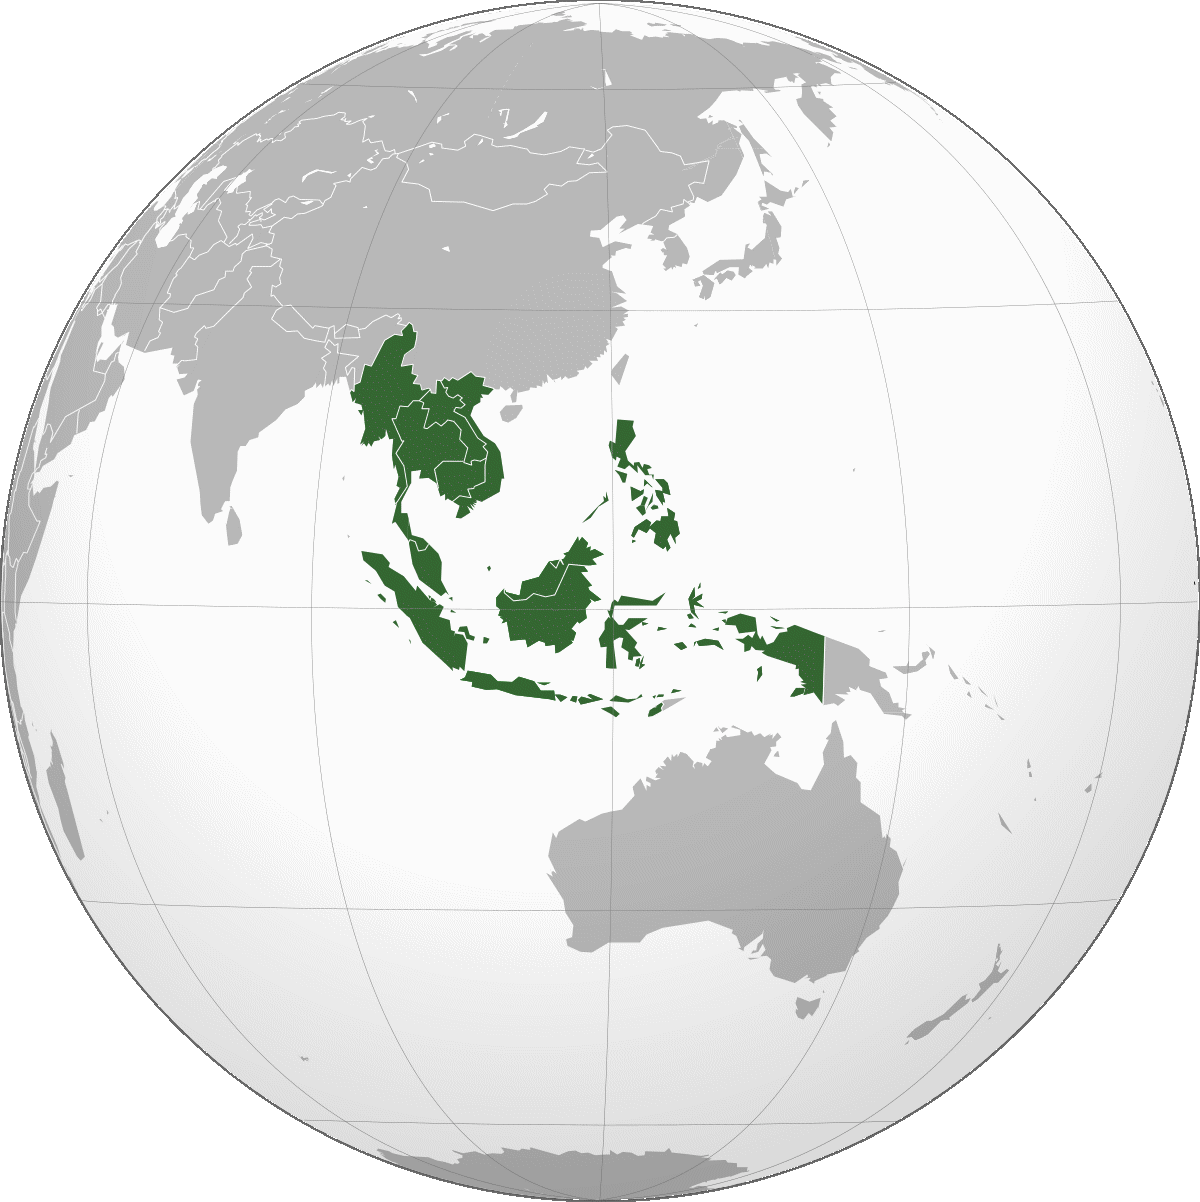 asie du sud est